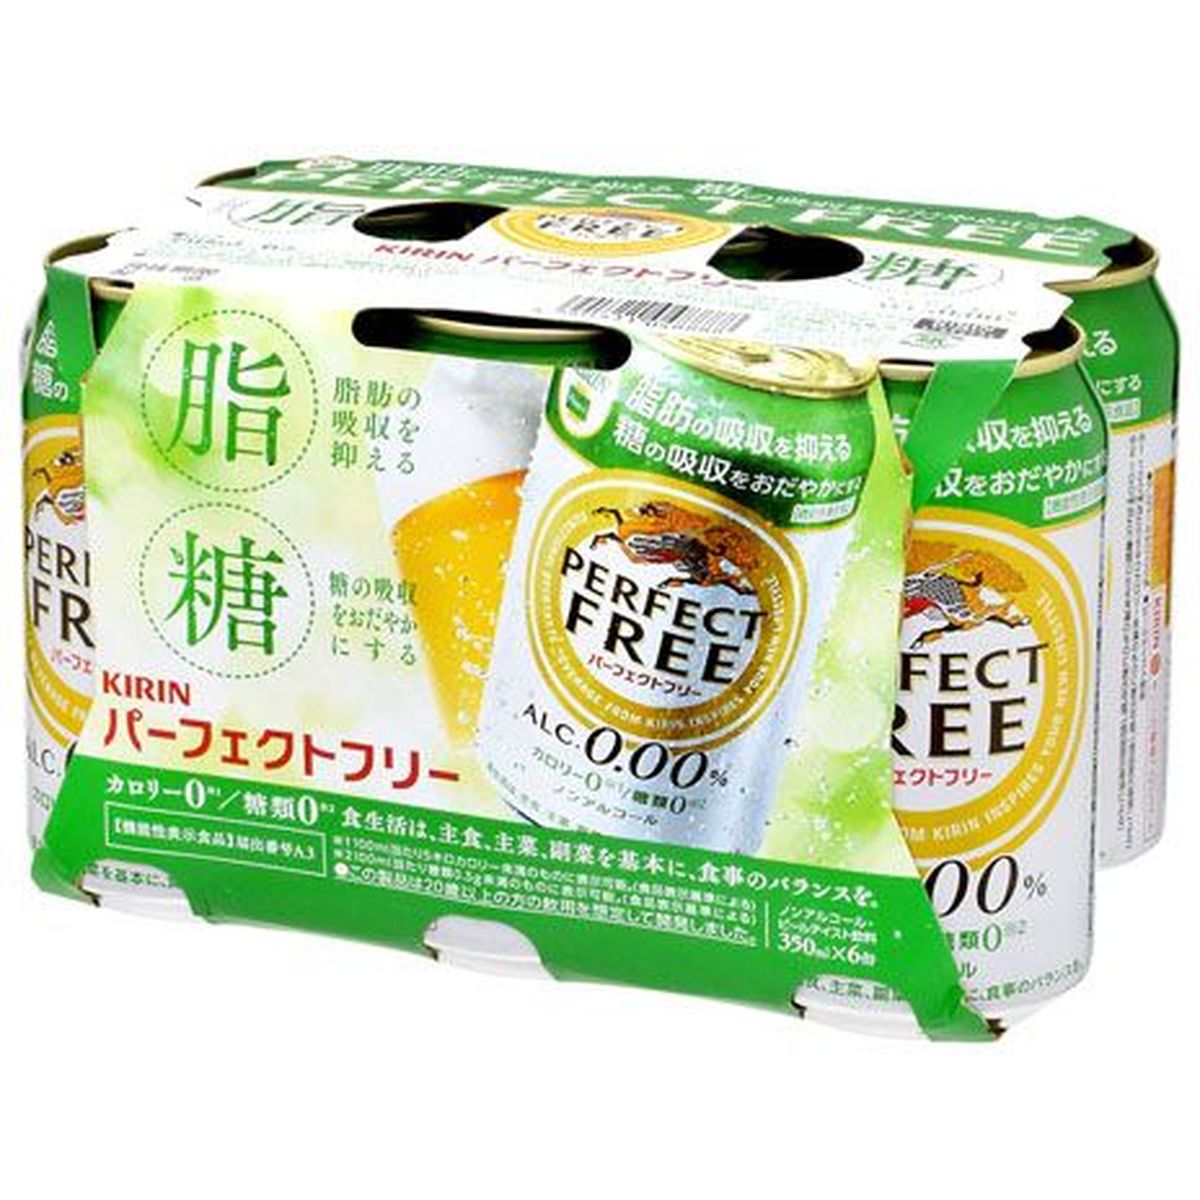 【4個入リ】キリン パーフェクトフリー 6缶パック 350